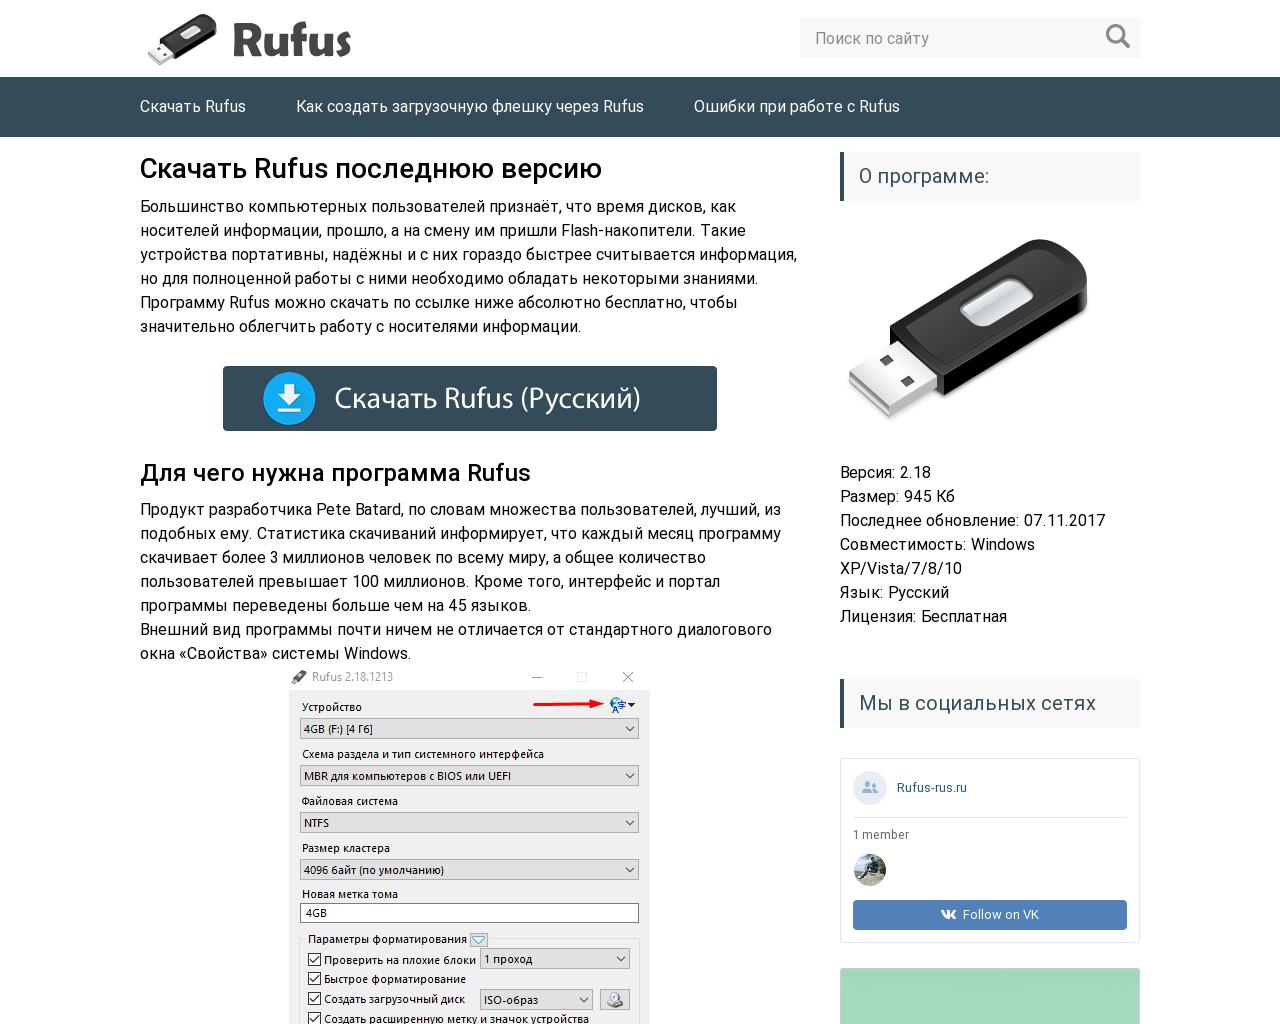 Изображение сайта rufus-rus.ru в разрешении 1280x1024